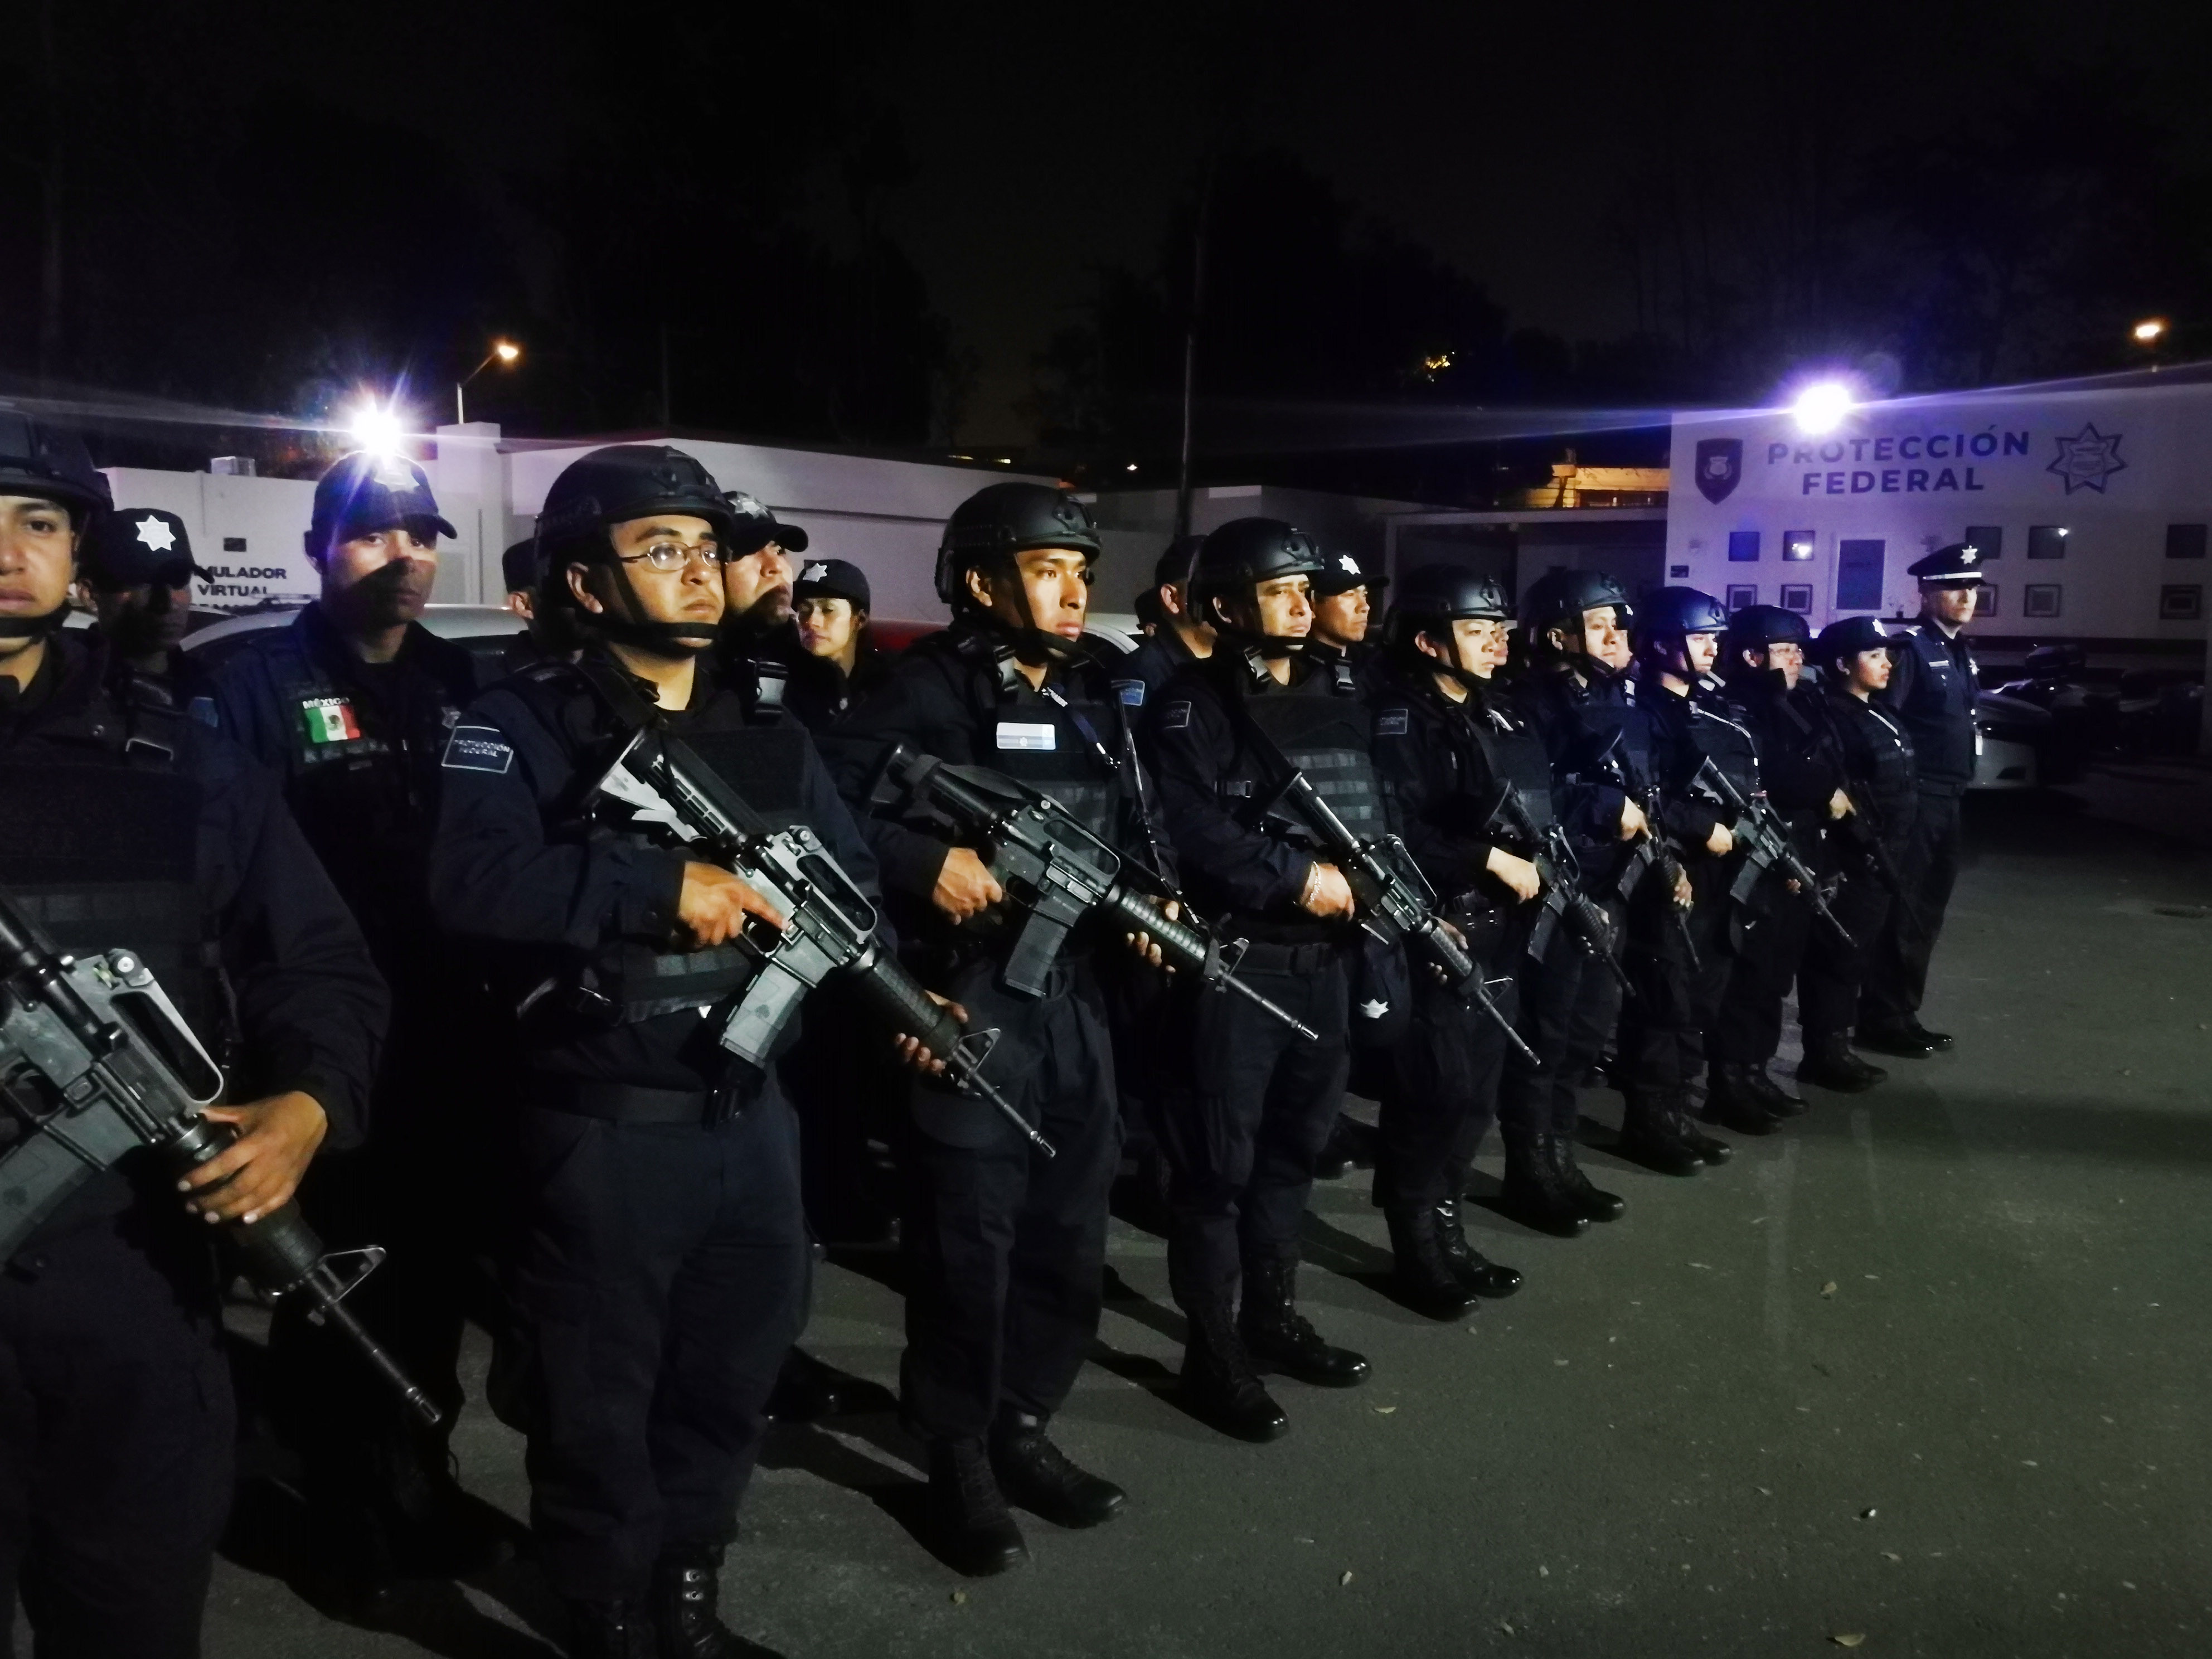 El Servicio de Protección Federal desplegó a 192 policías en los primeros minutos del primero de enero, con la finalidad de brindar seguridad en 35 instalaciones de la FGR en la Ciudad de México.